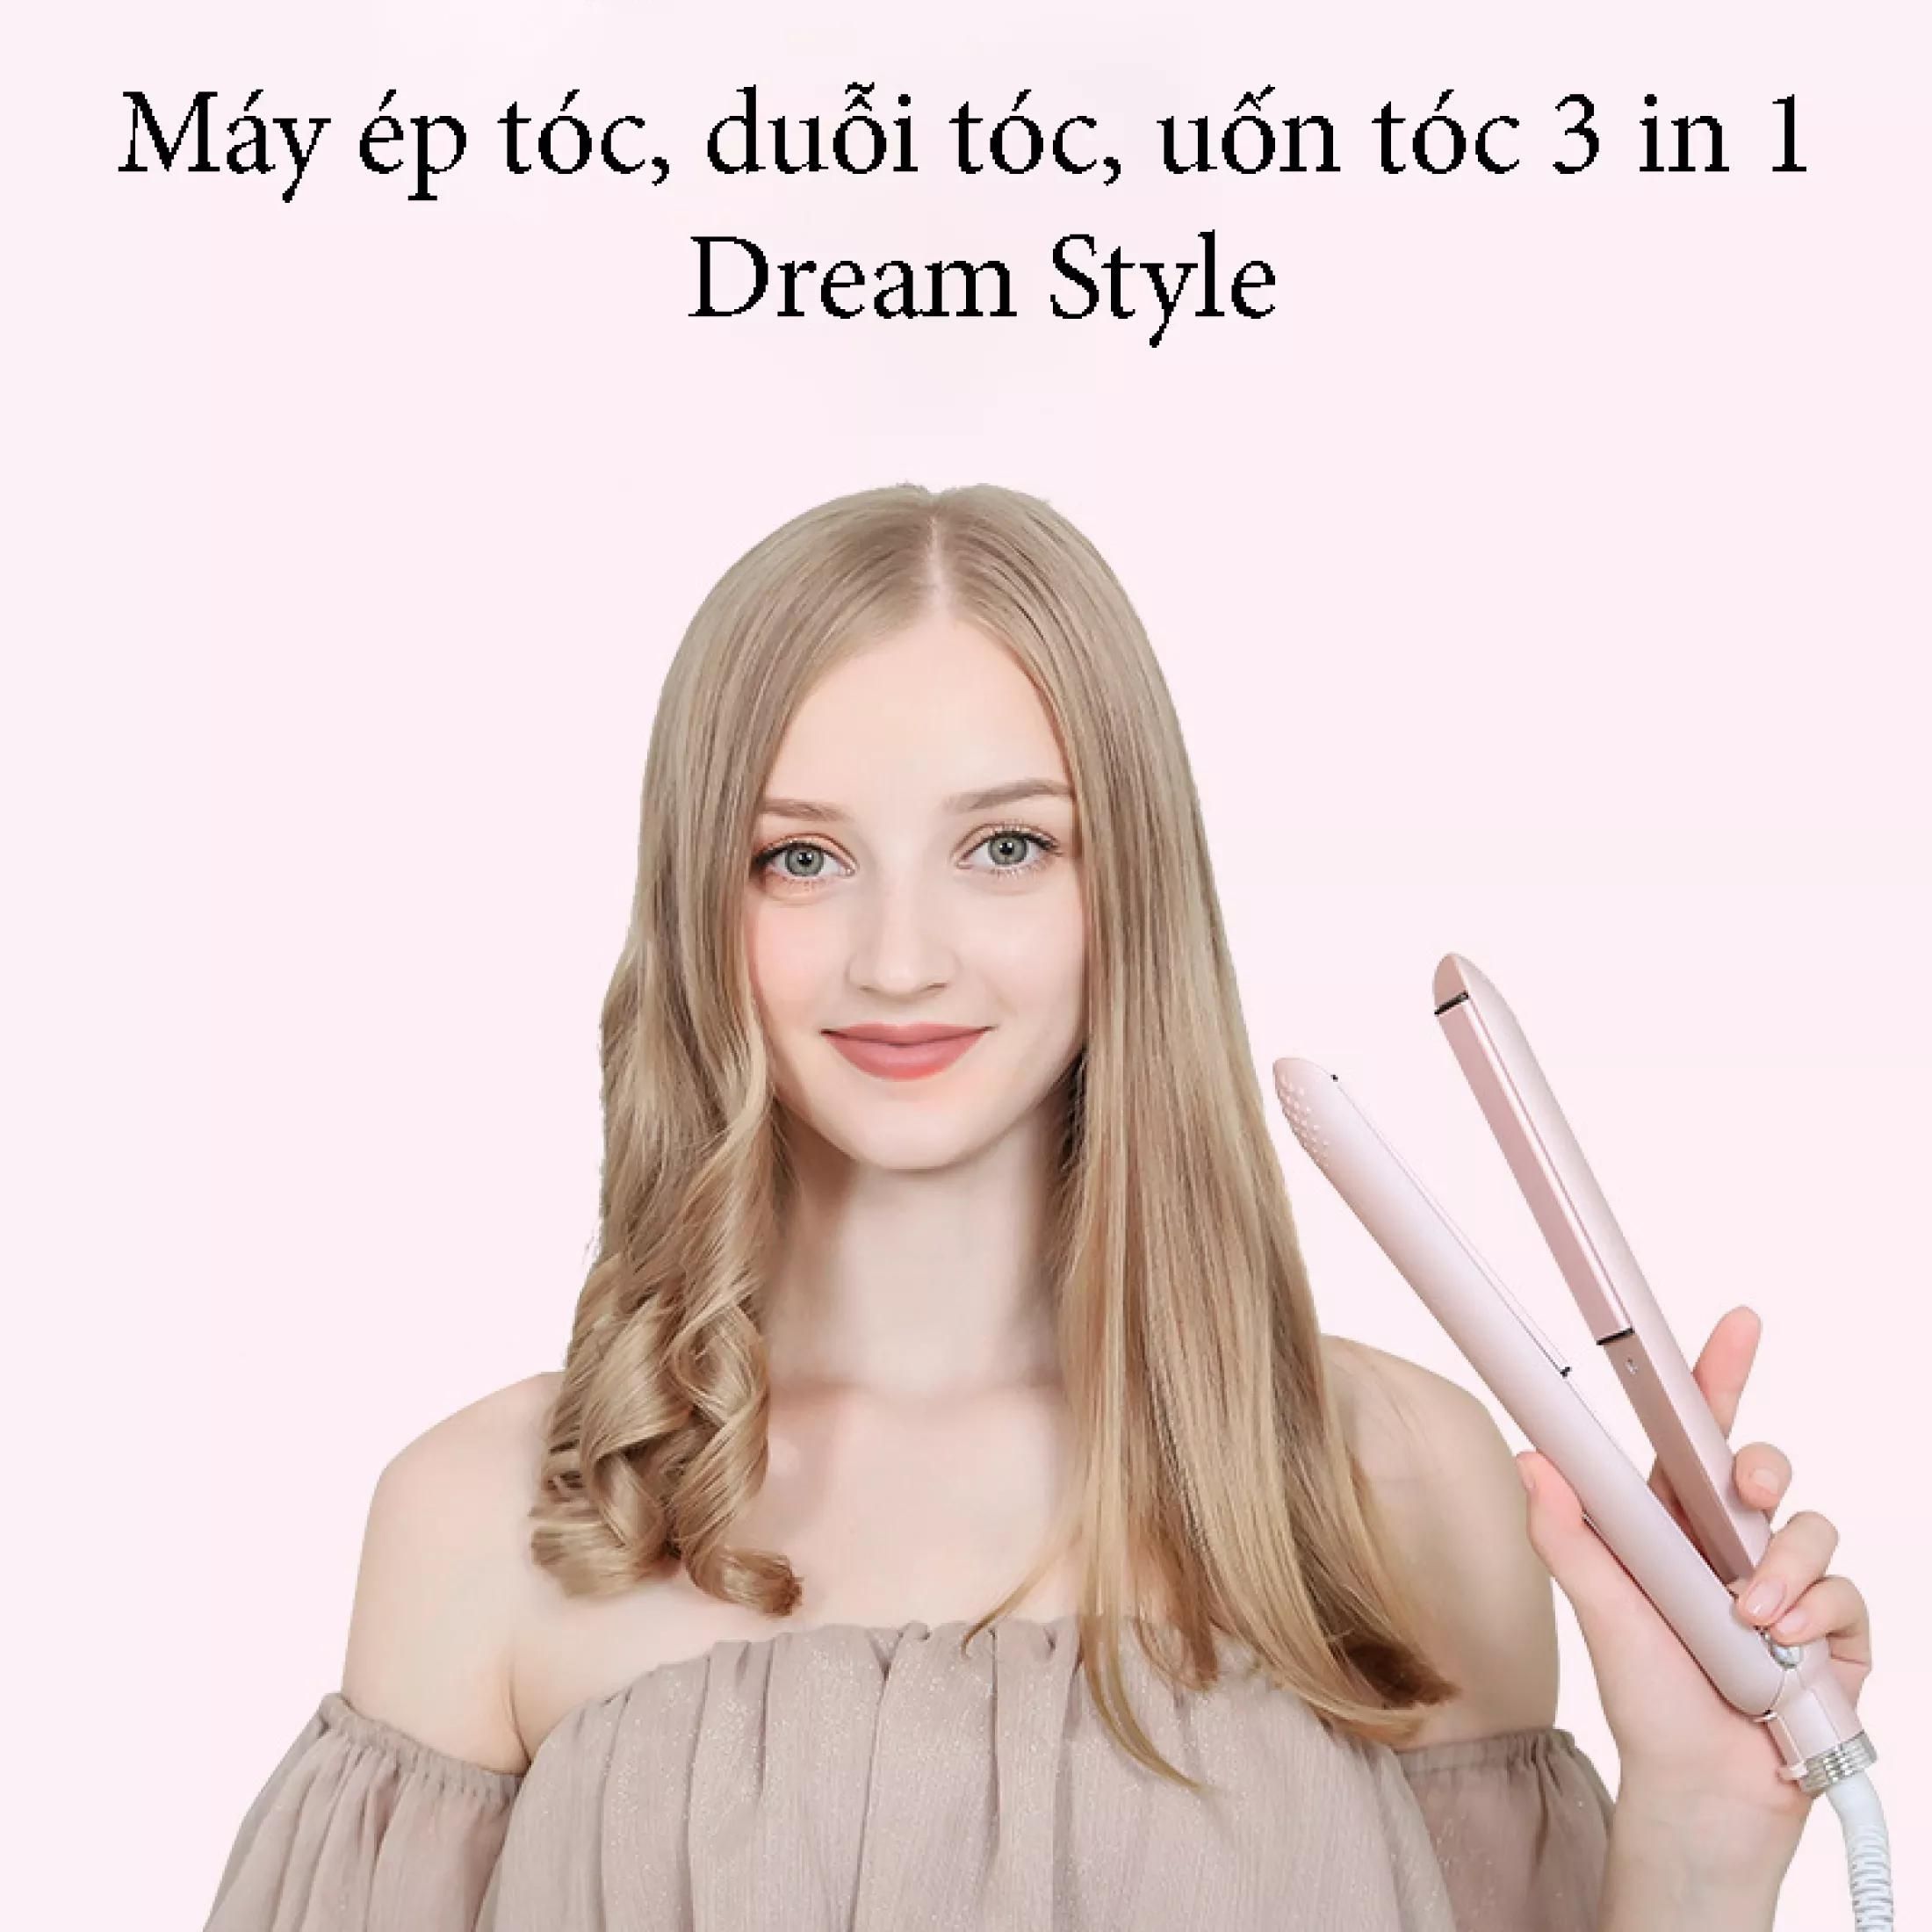 Máy làm tóc đa năng 3 in 1 Dream Style - Máy uốn tóc, ép tóc, duỗi tóc siêu tiện lợi, tạo kiểu chuẩn salon - Máy uốn tóc mini 5 chế độ phù hợp với mọi chất tóc, giữ nếp lâu, không làm hỏng tóc, chế độ tự ngắt khi quá nhiệt